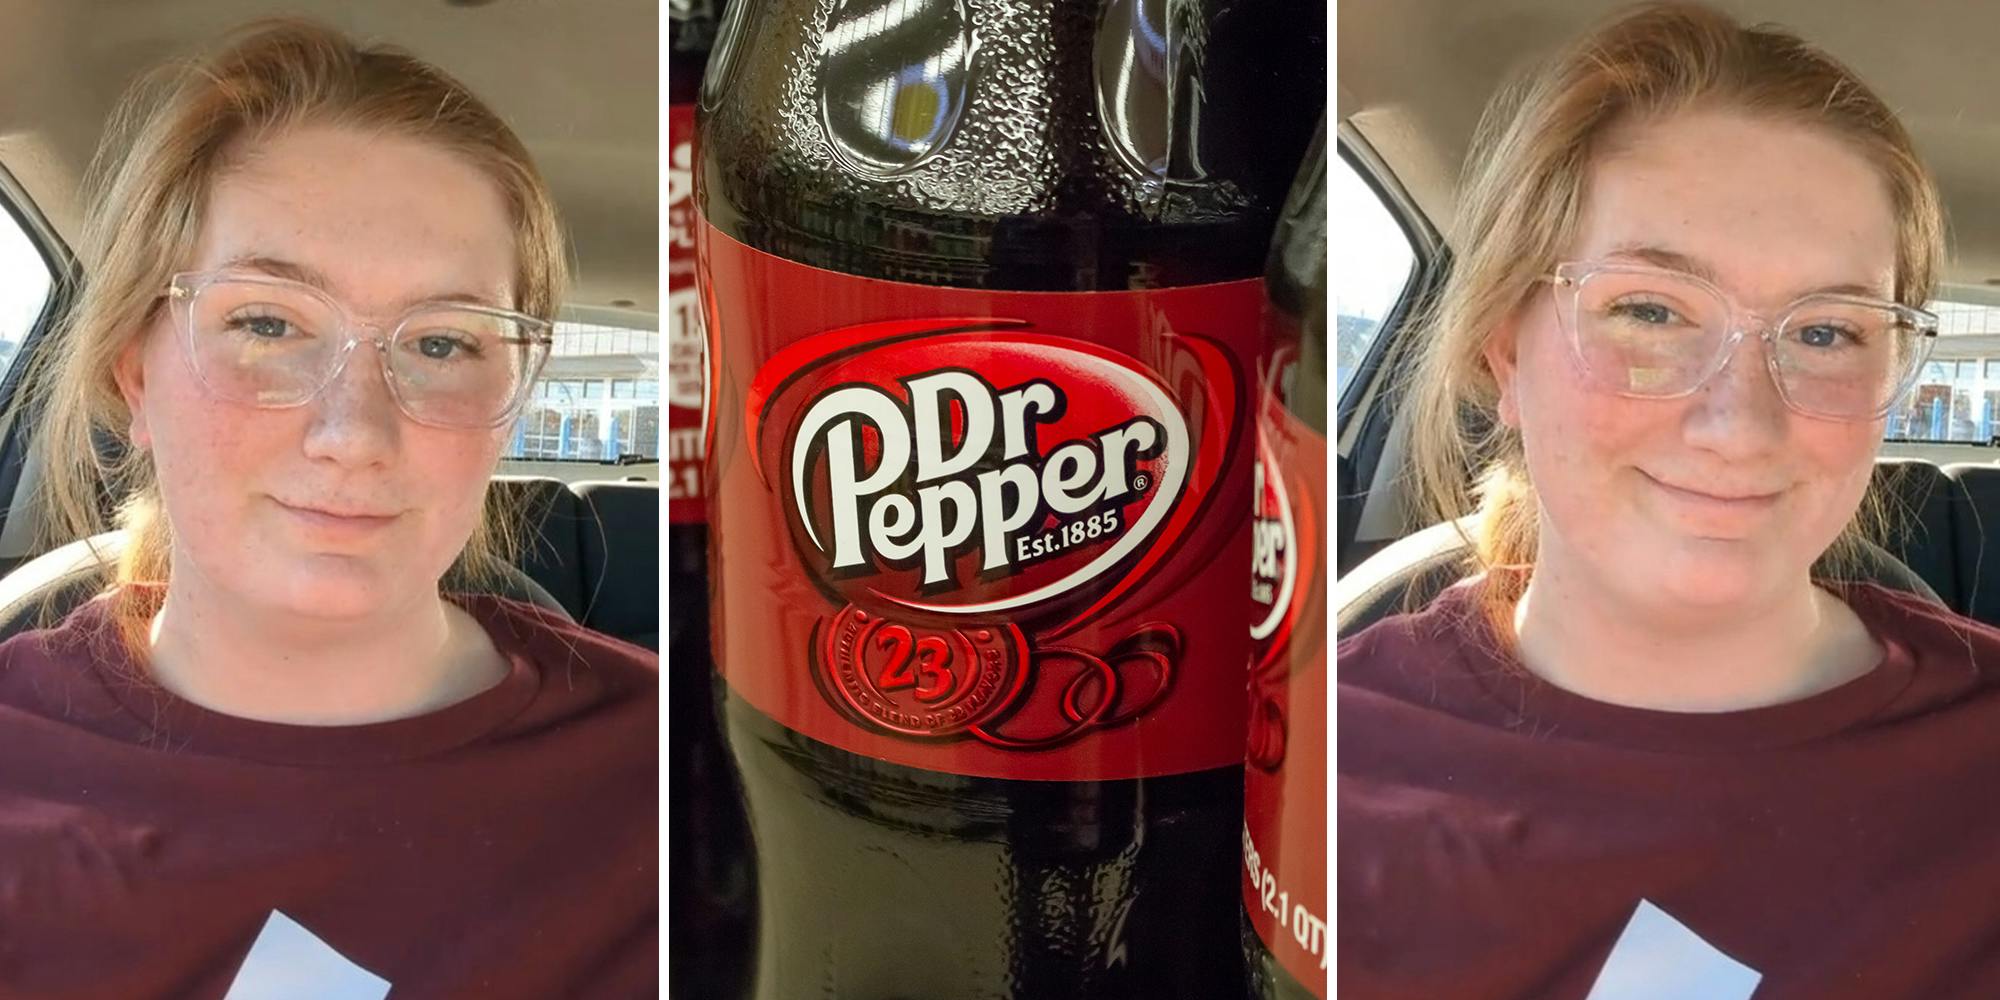 Customer opens Dr Pepper bottle. Then she notices something strange